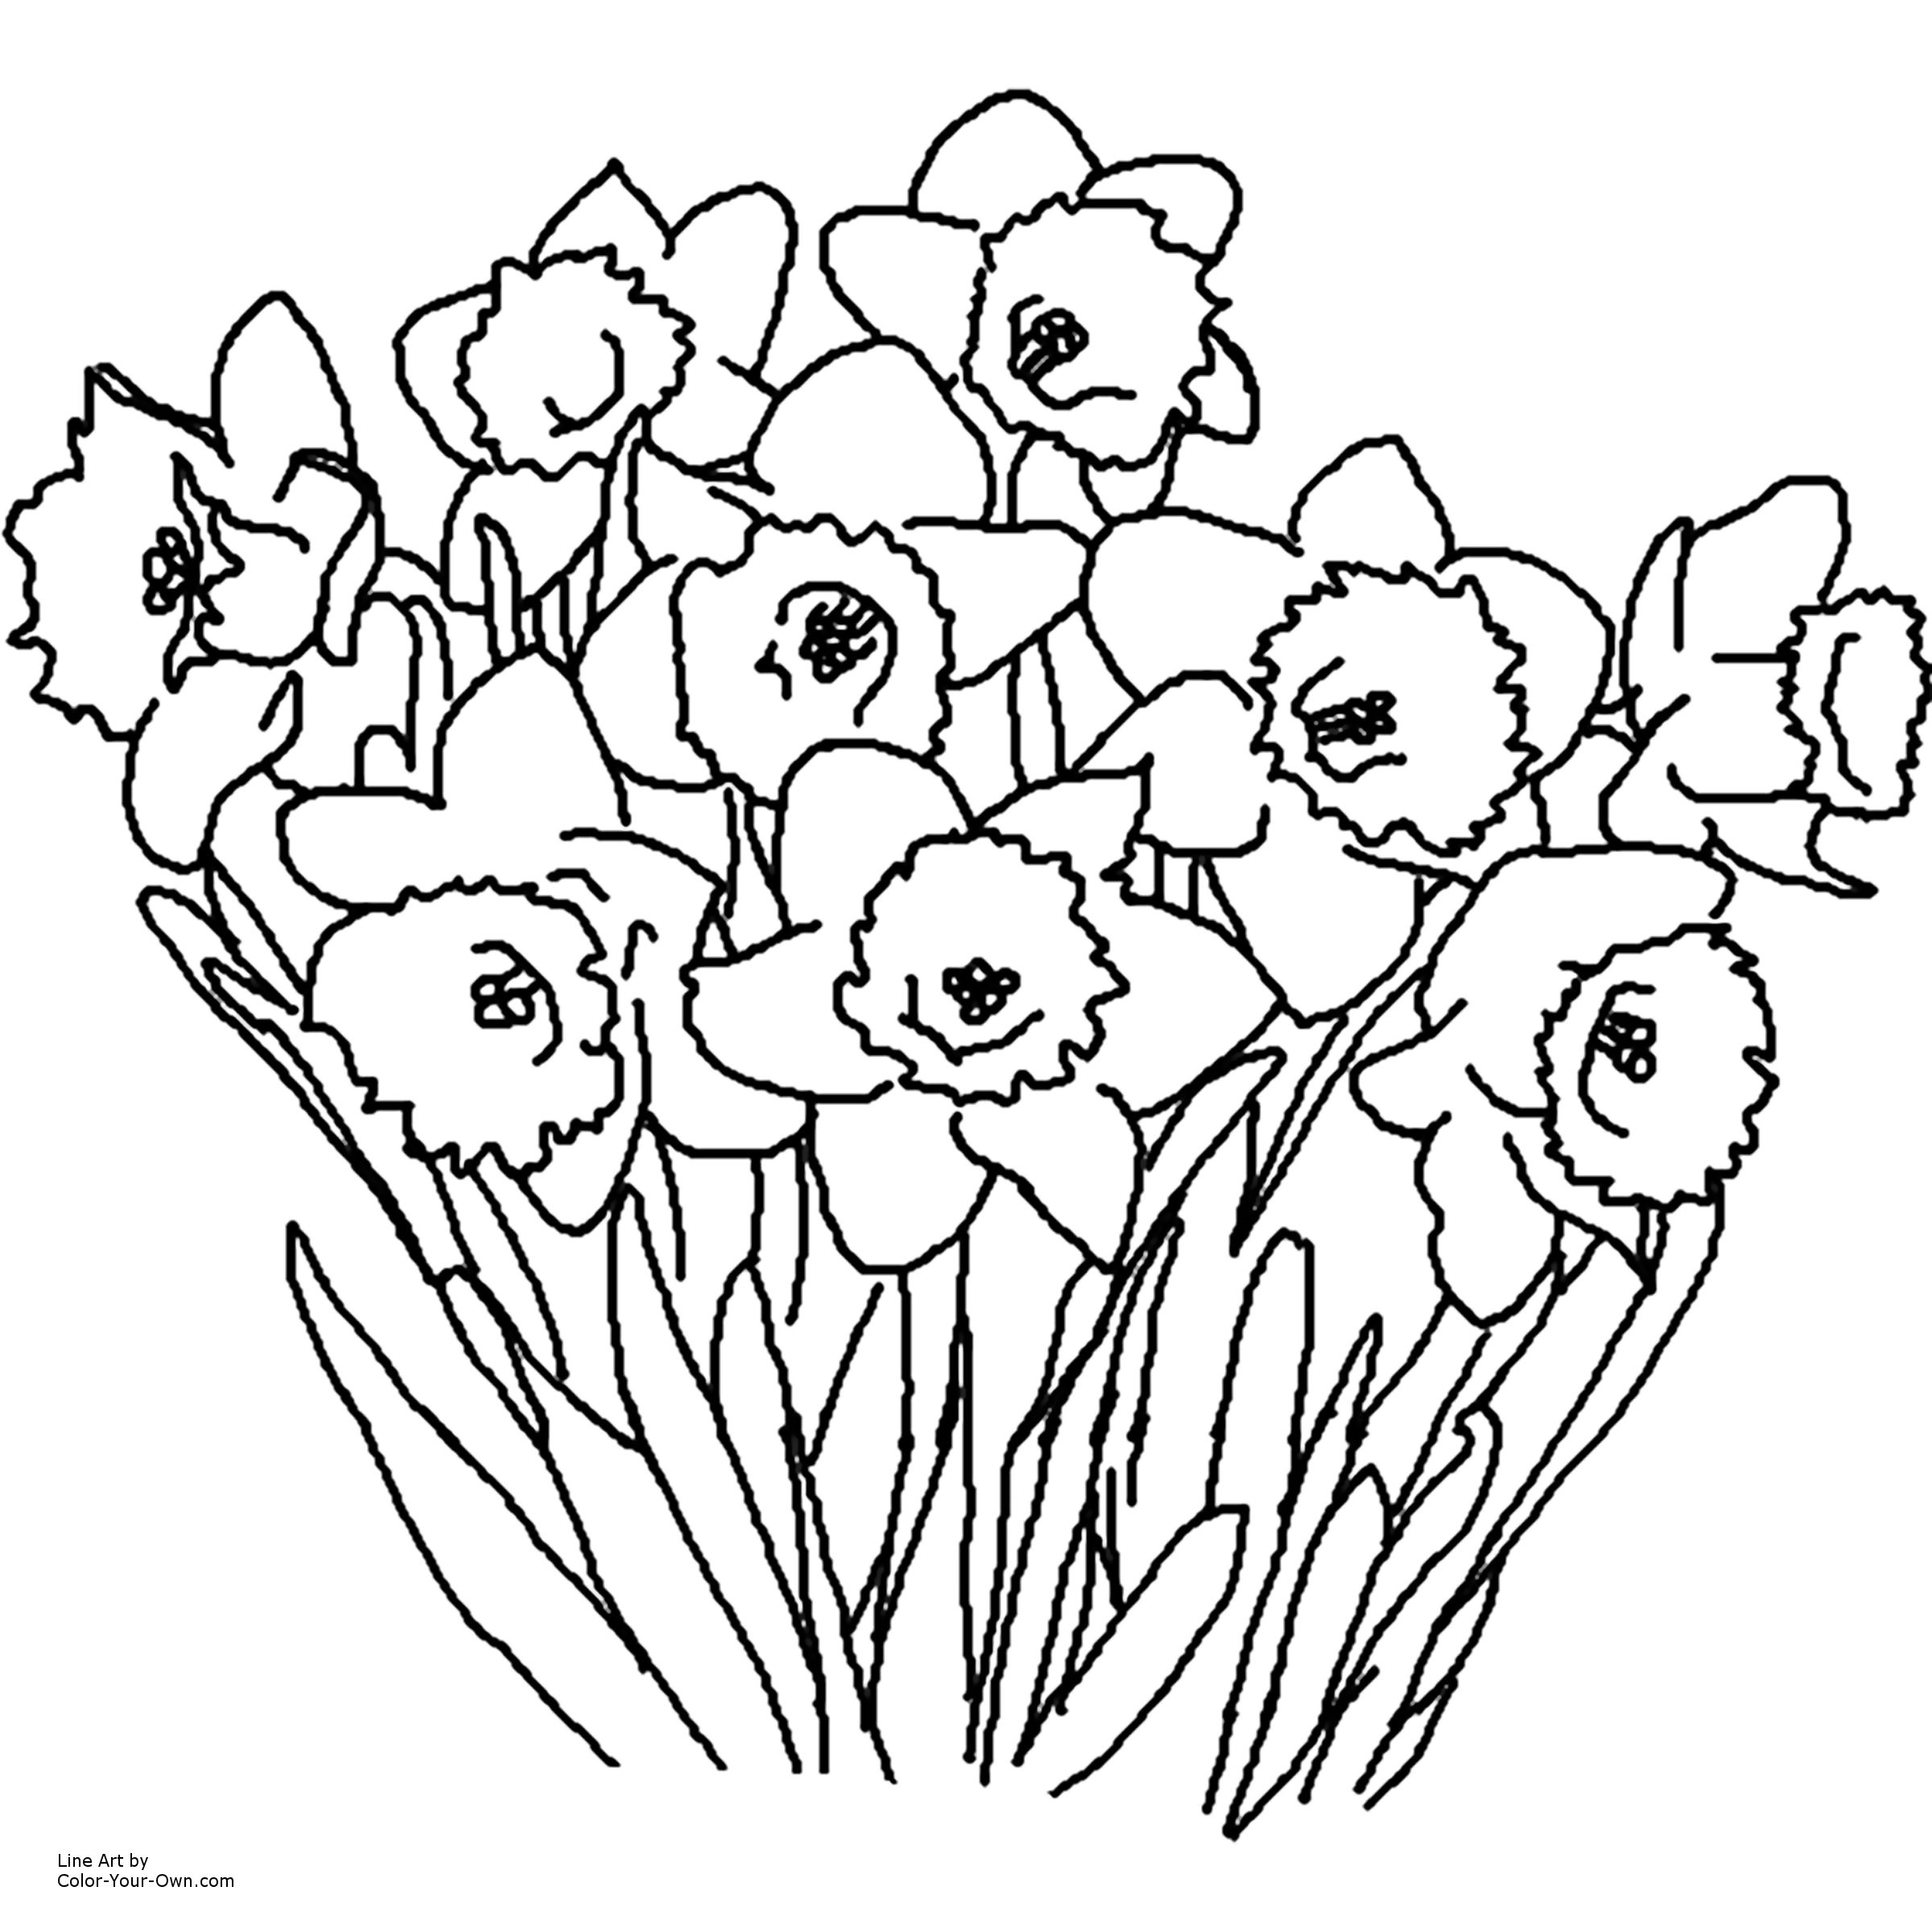 Весенние цветы рисунок для детей